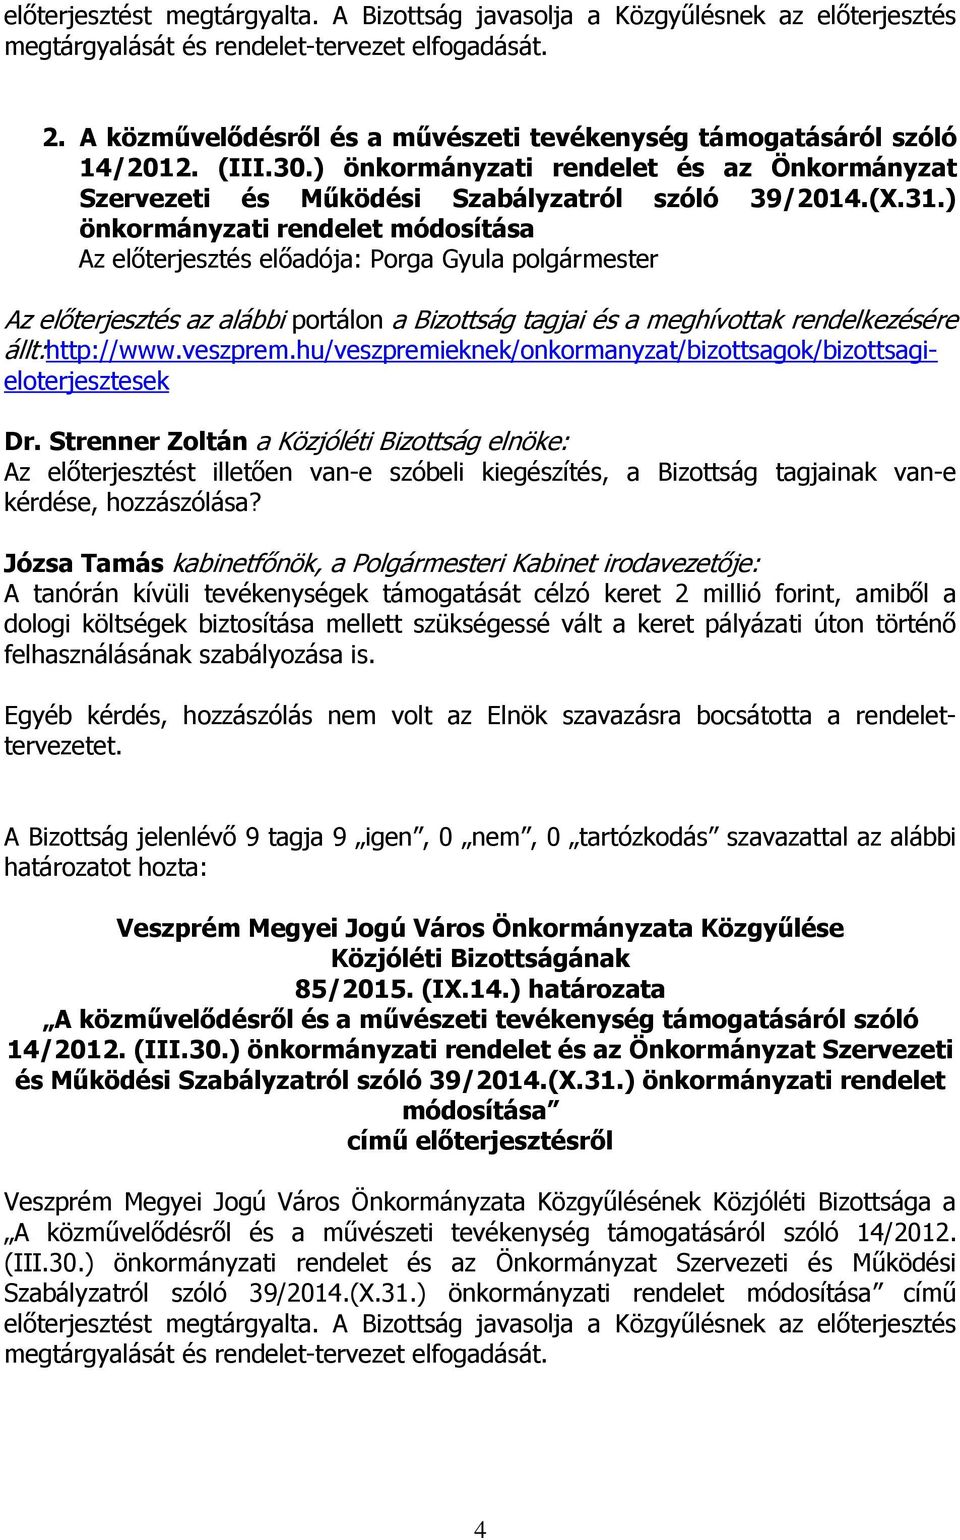 ) önkormányzati rendelet módosítása állt:http://www.veszprem.